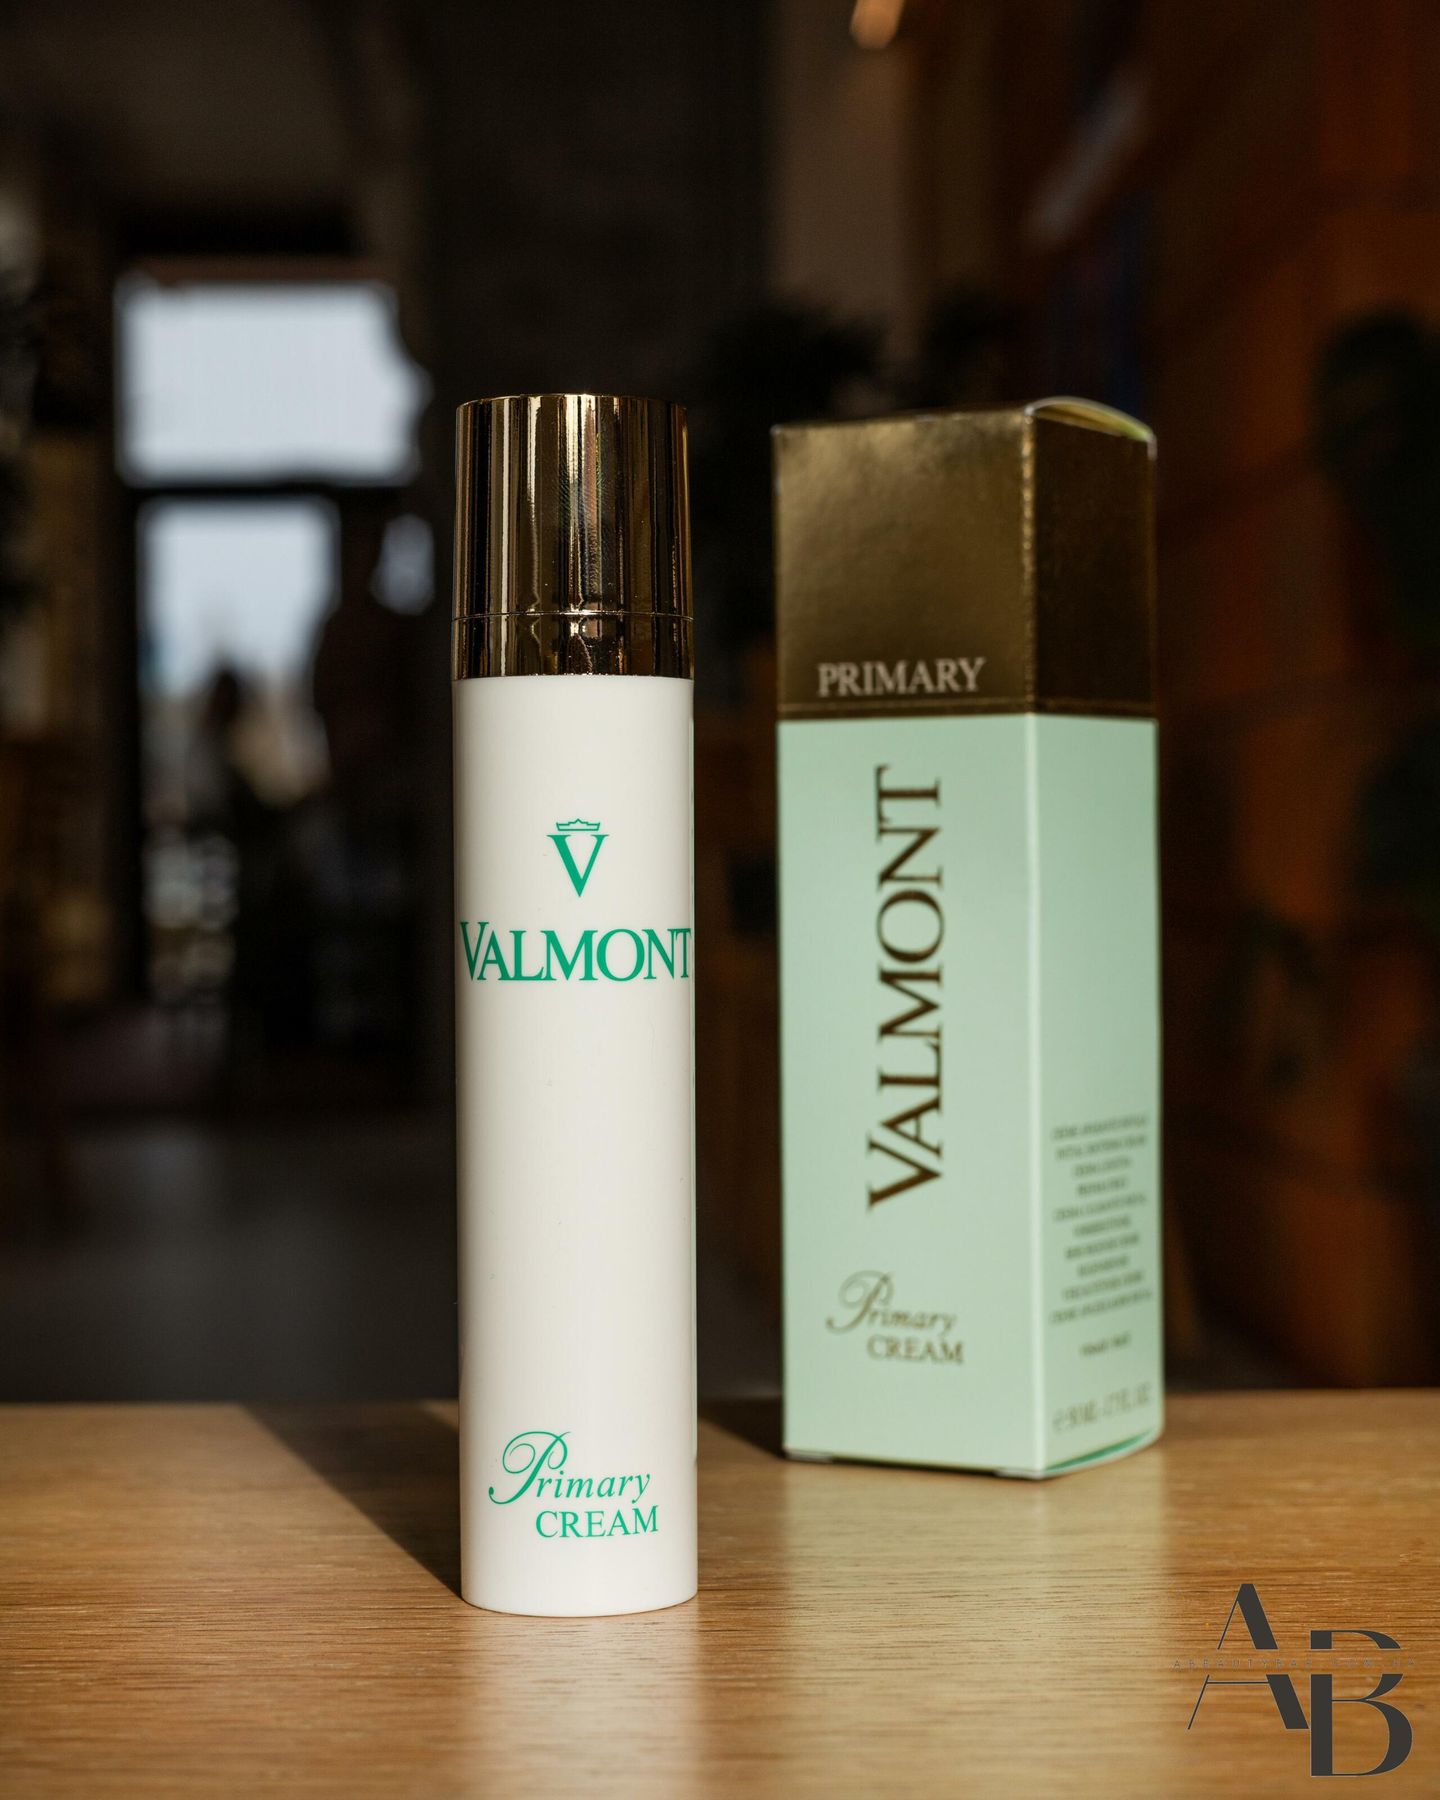 Успокаивающий крем для чувствительной кожи Valmont Primary Cream, 50мл